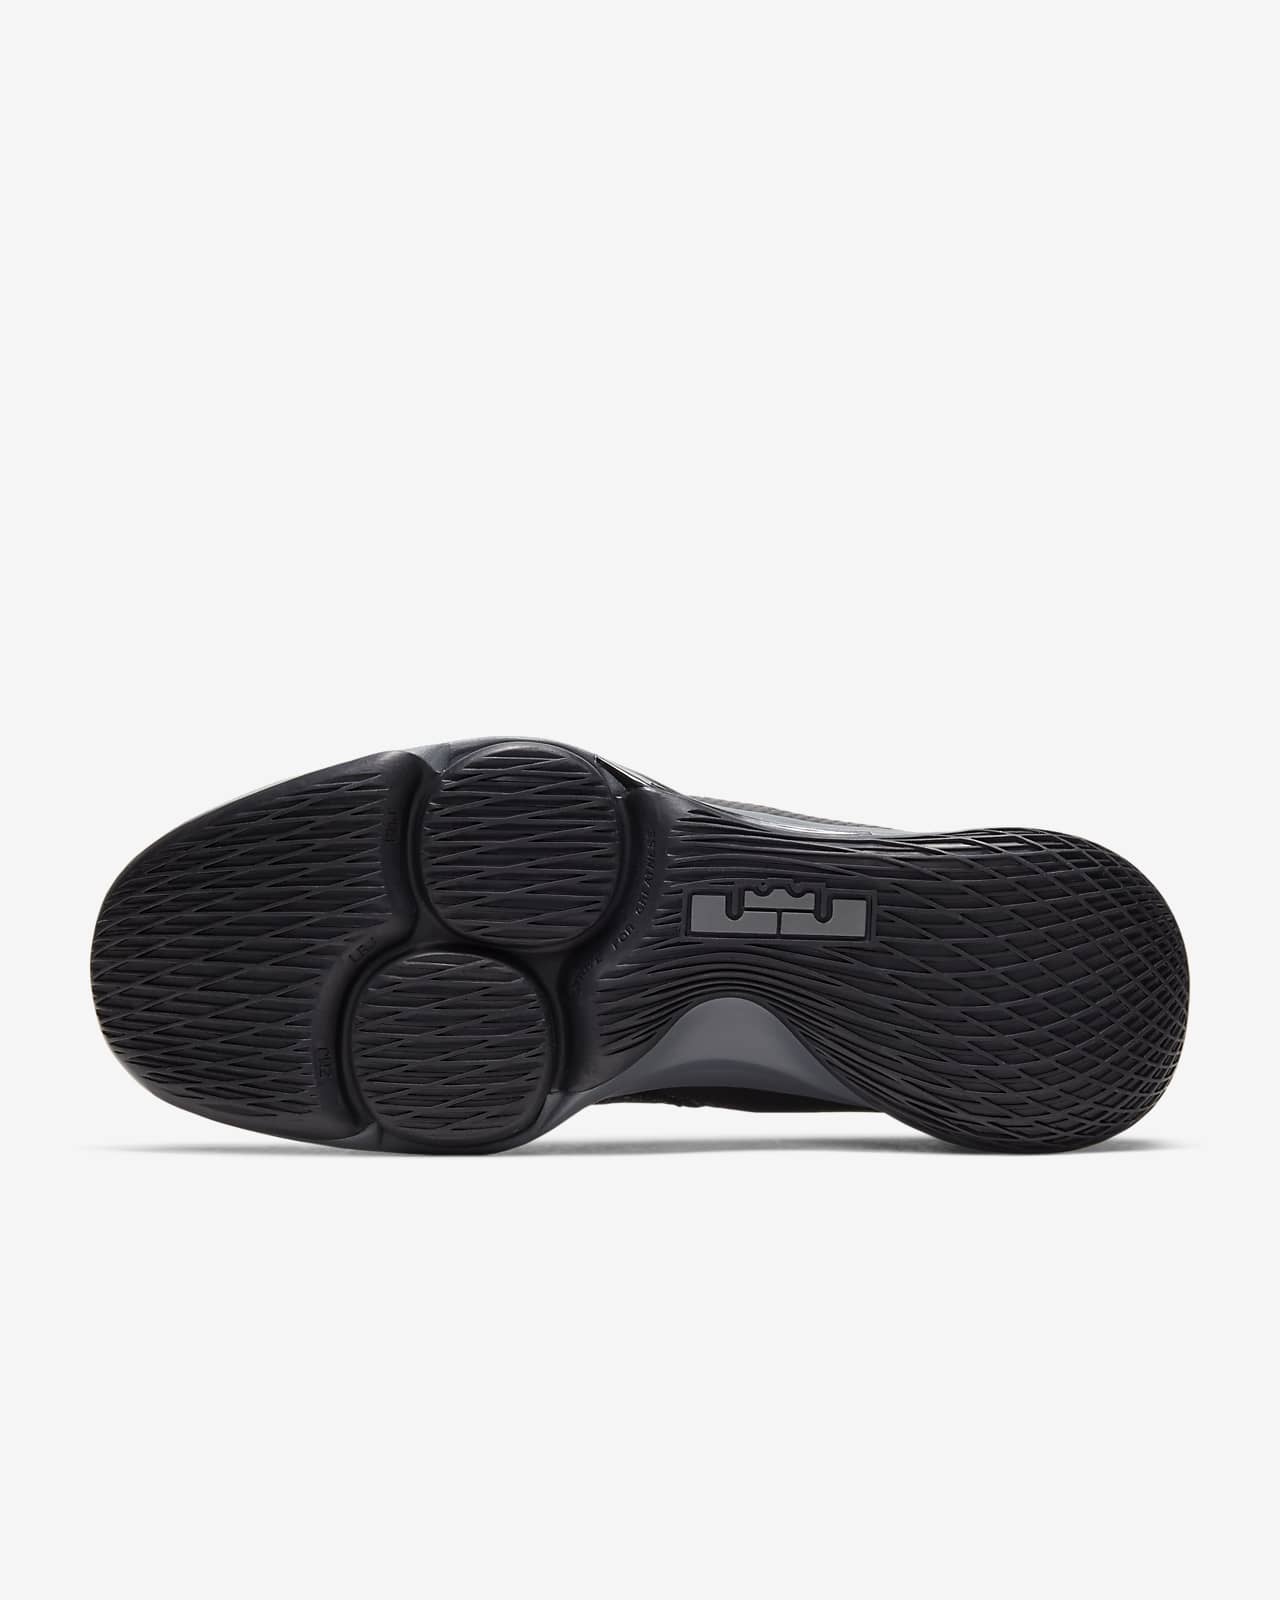 LeBron Witness 4 Basketball Shoes. Nike UK